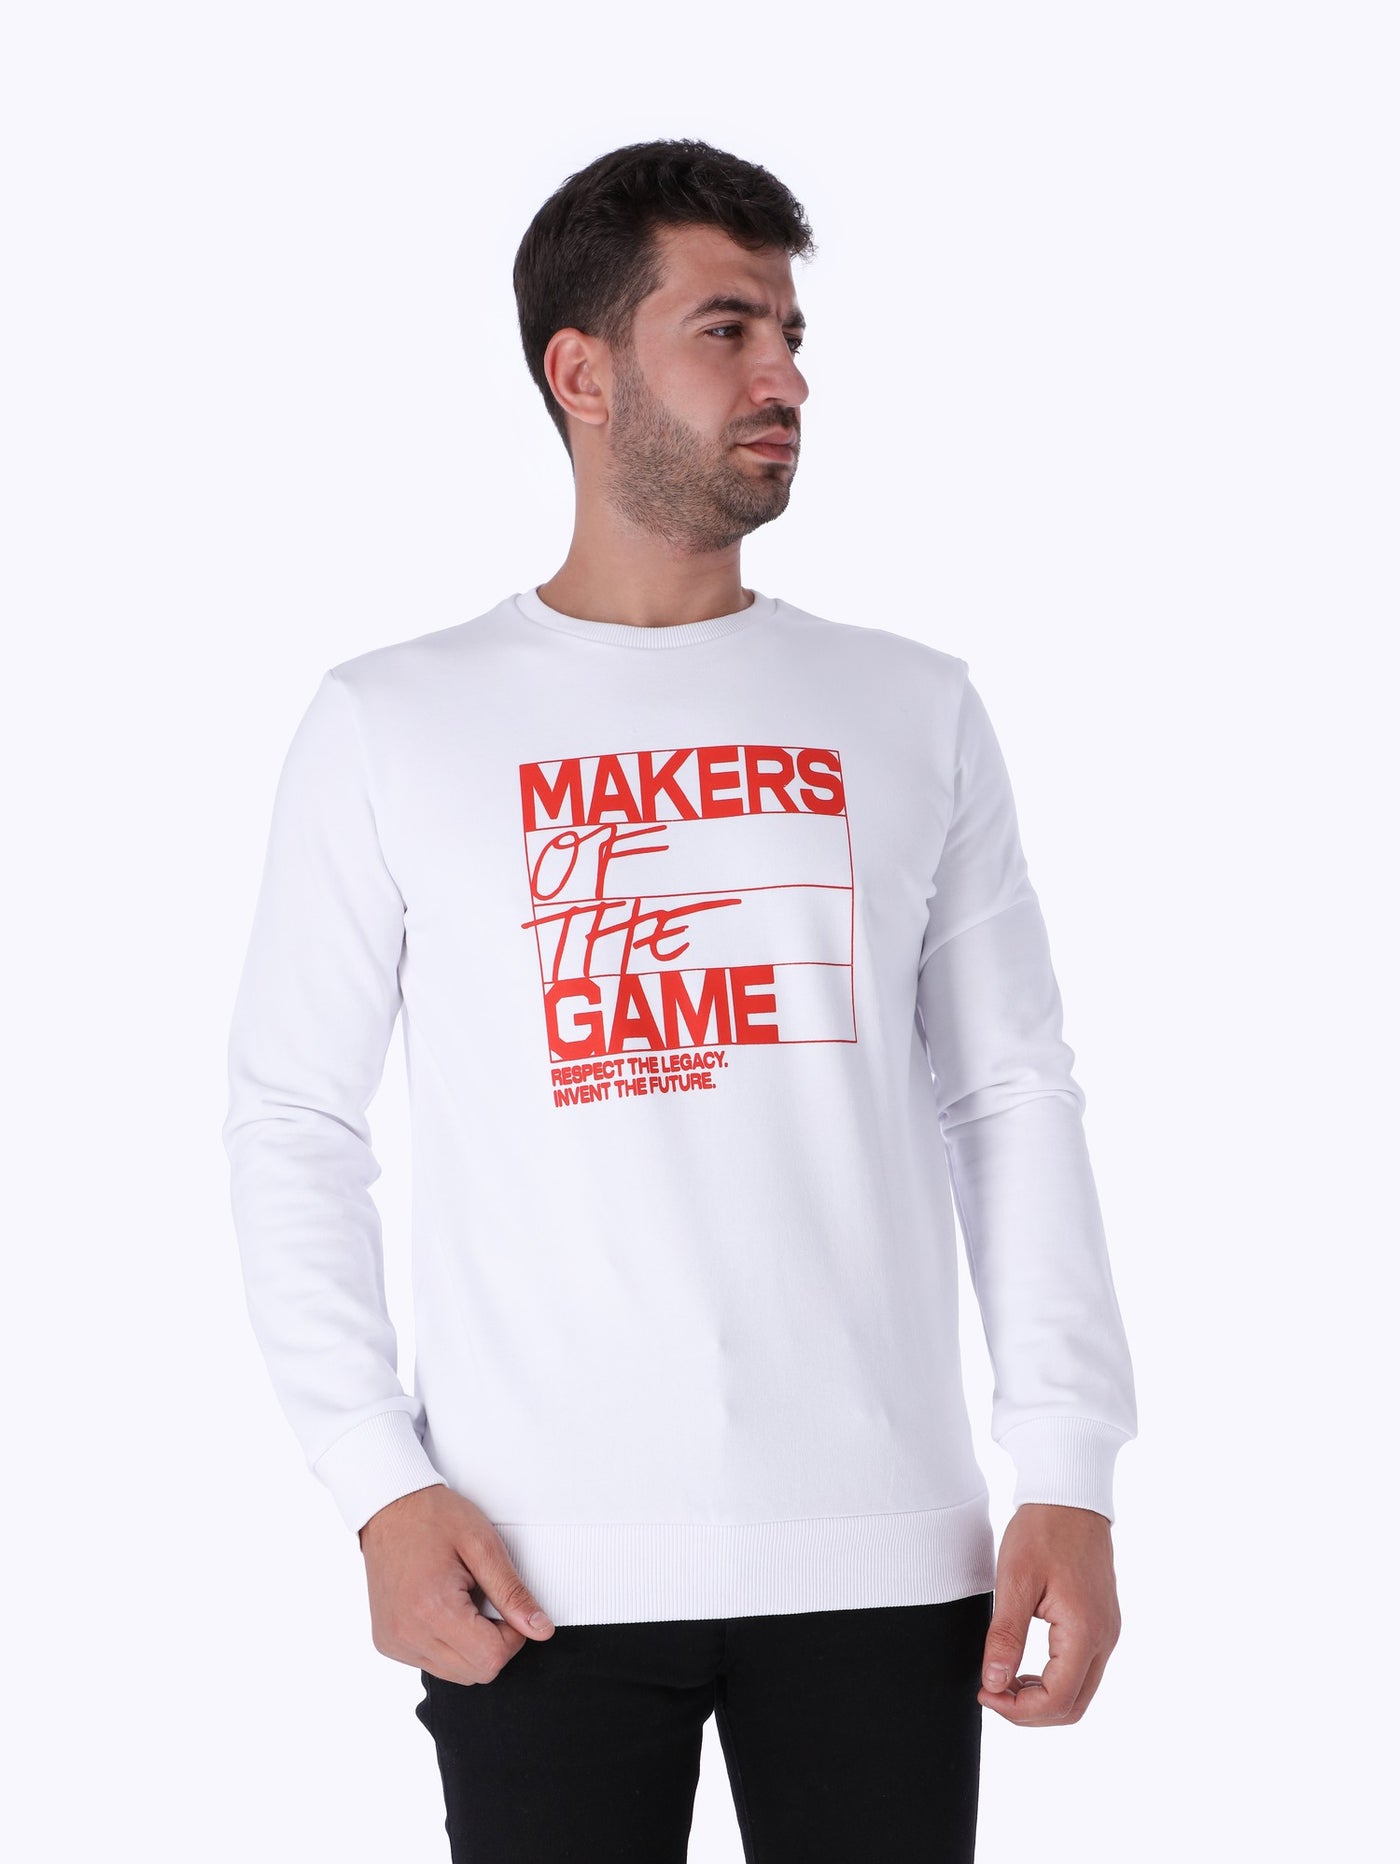 OR Men's Printed Sweatshirt